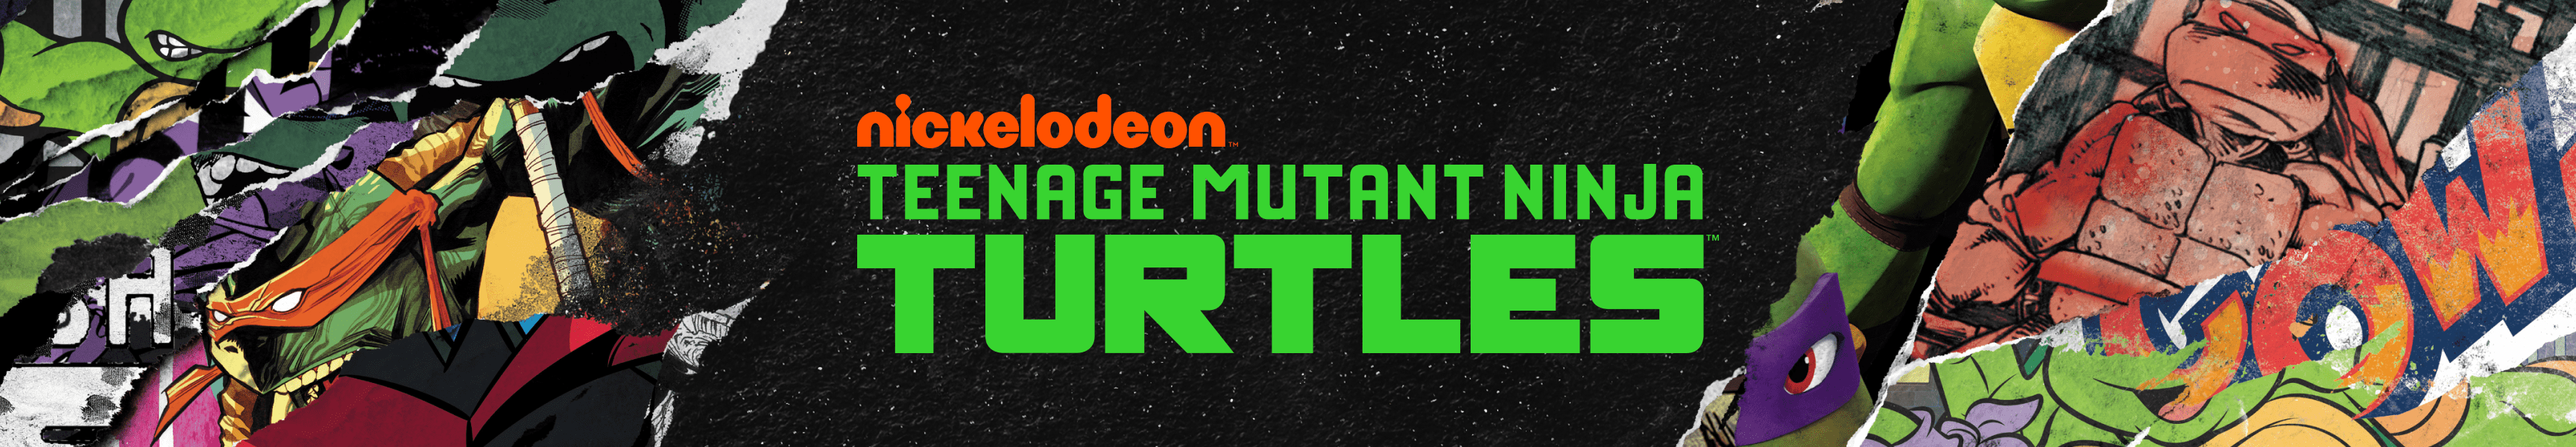 Teenage Mutant Ninja Turtles Meilleures ventes